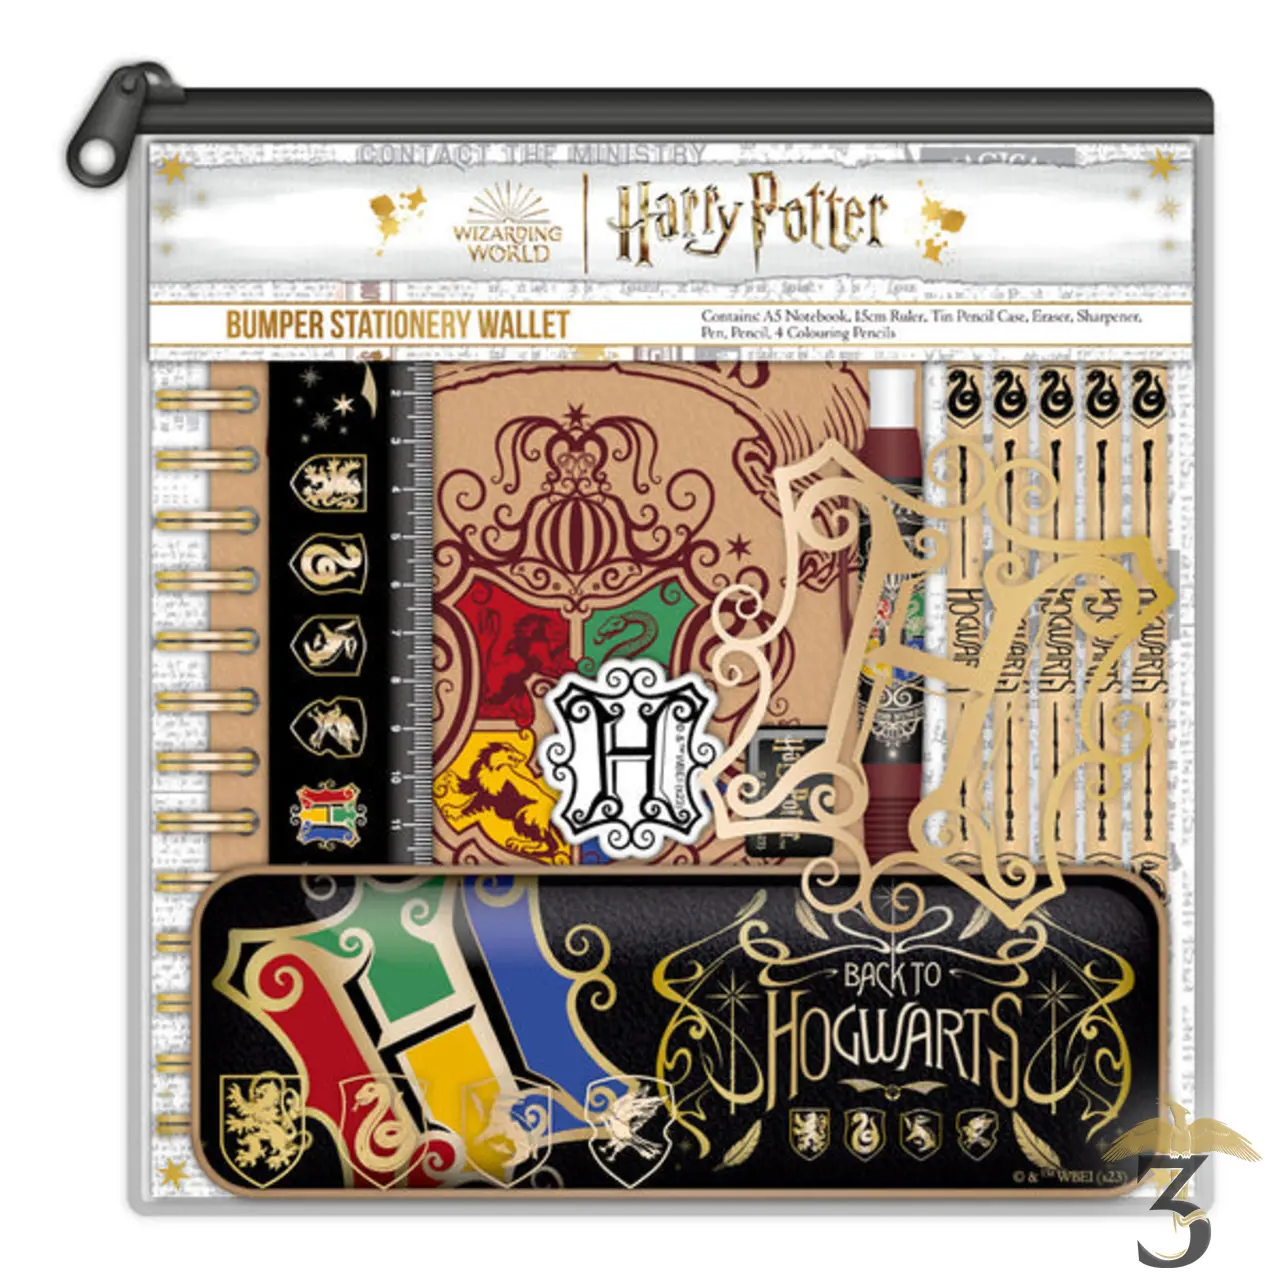 ⚡️ Boutique de cadeaux & objets Harry Potter